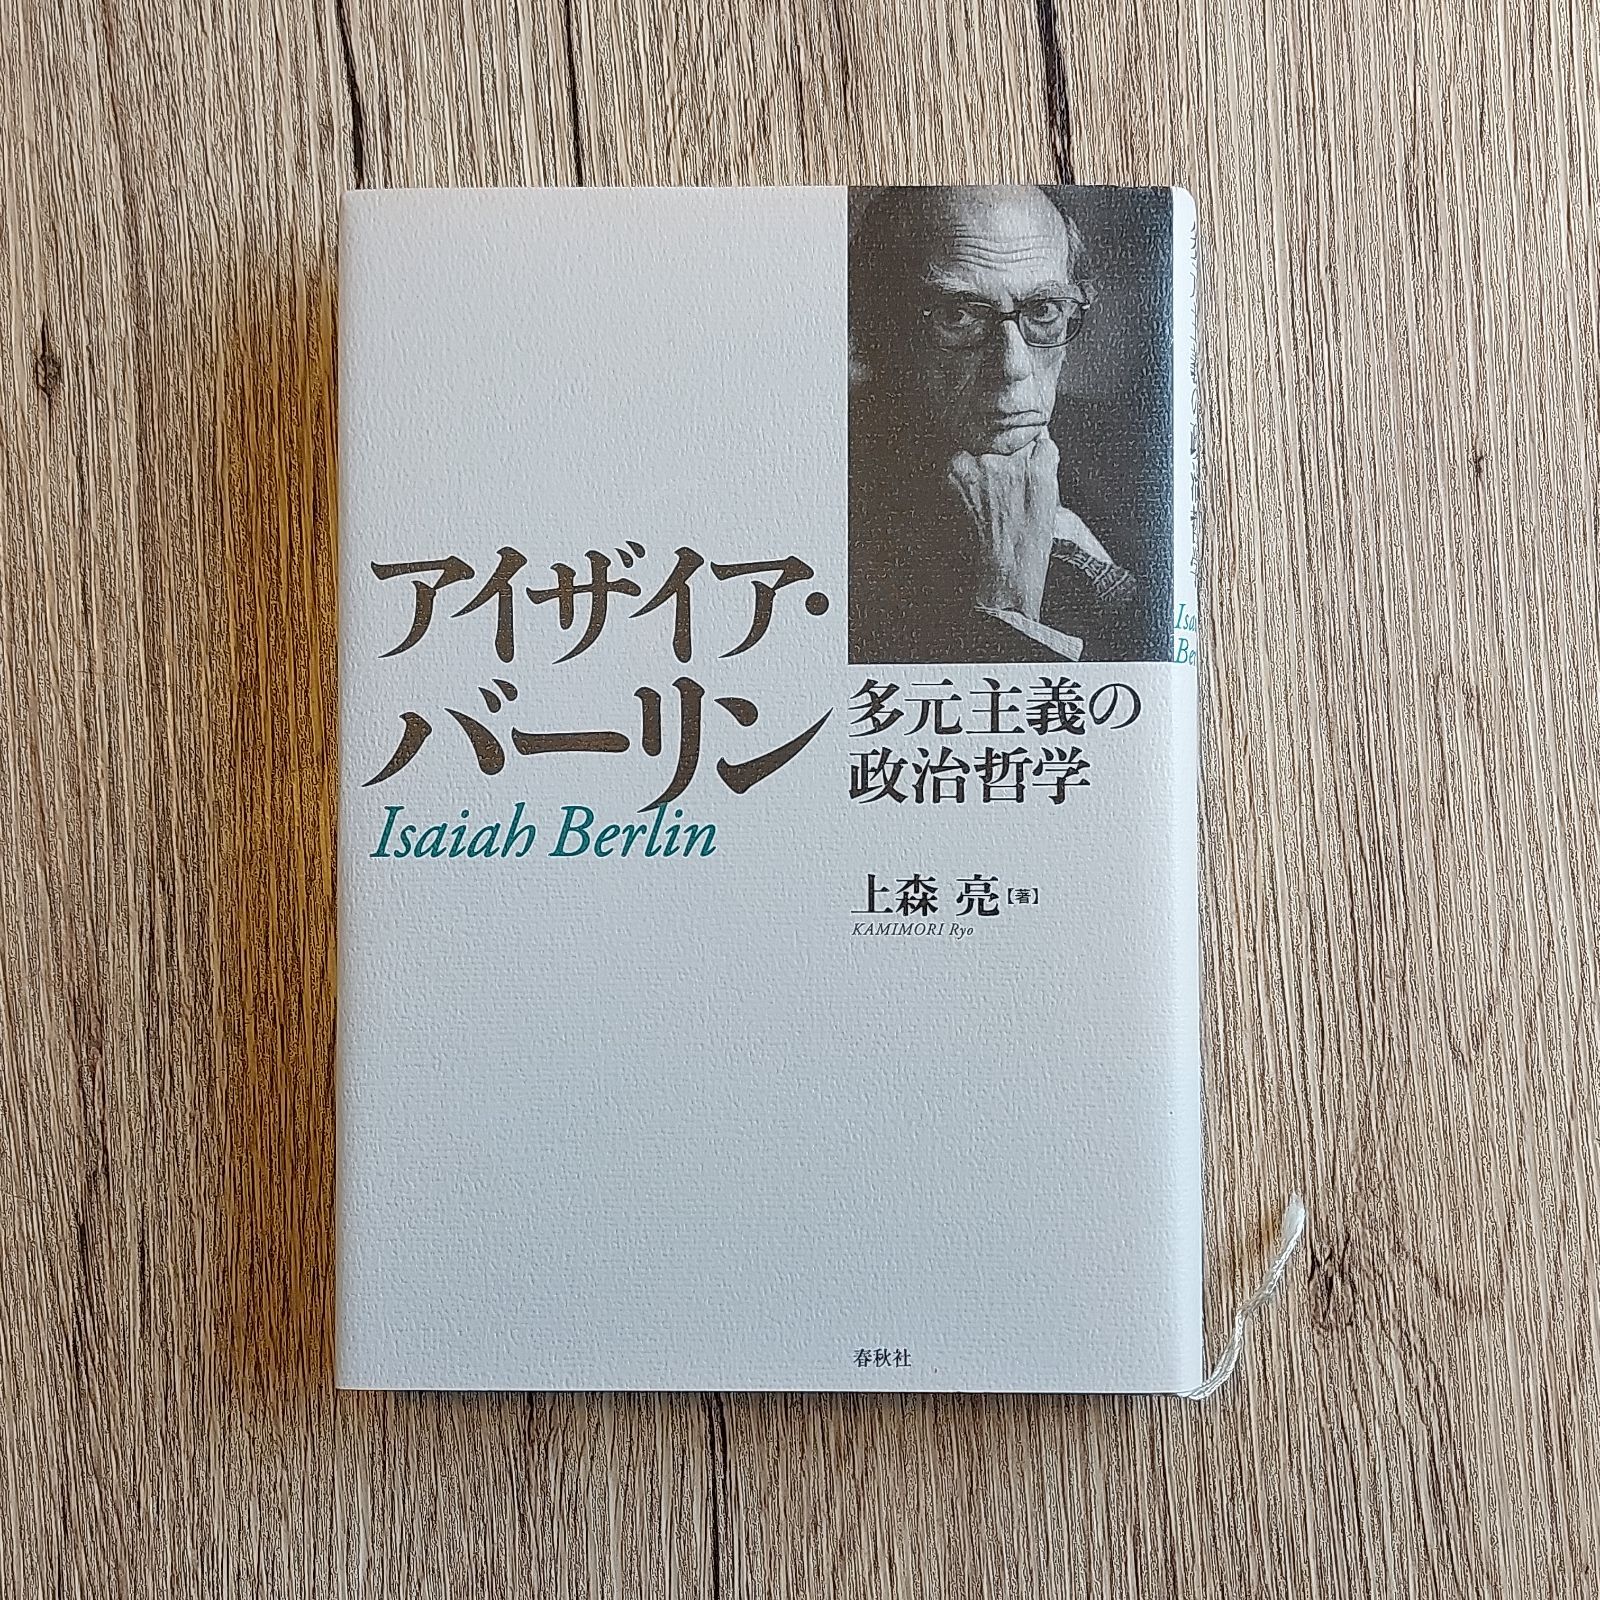 アイザイア・バーリン 多元主義の政治哲学 上森亮 - BOOKS NAKAYA